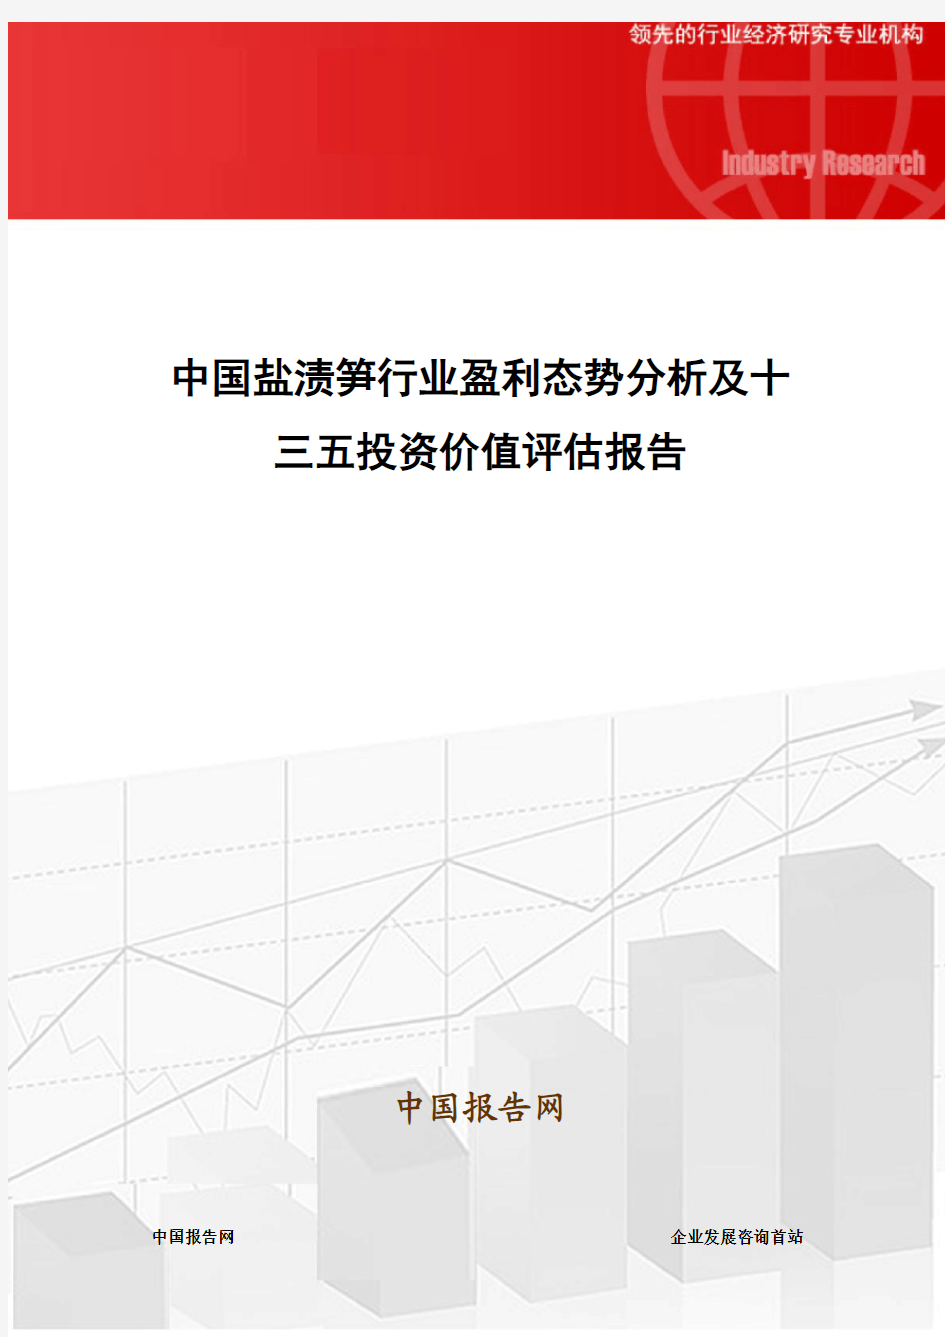 中国盐渍笋行业盈利态势分析及十三五投资价值评估报告